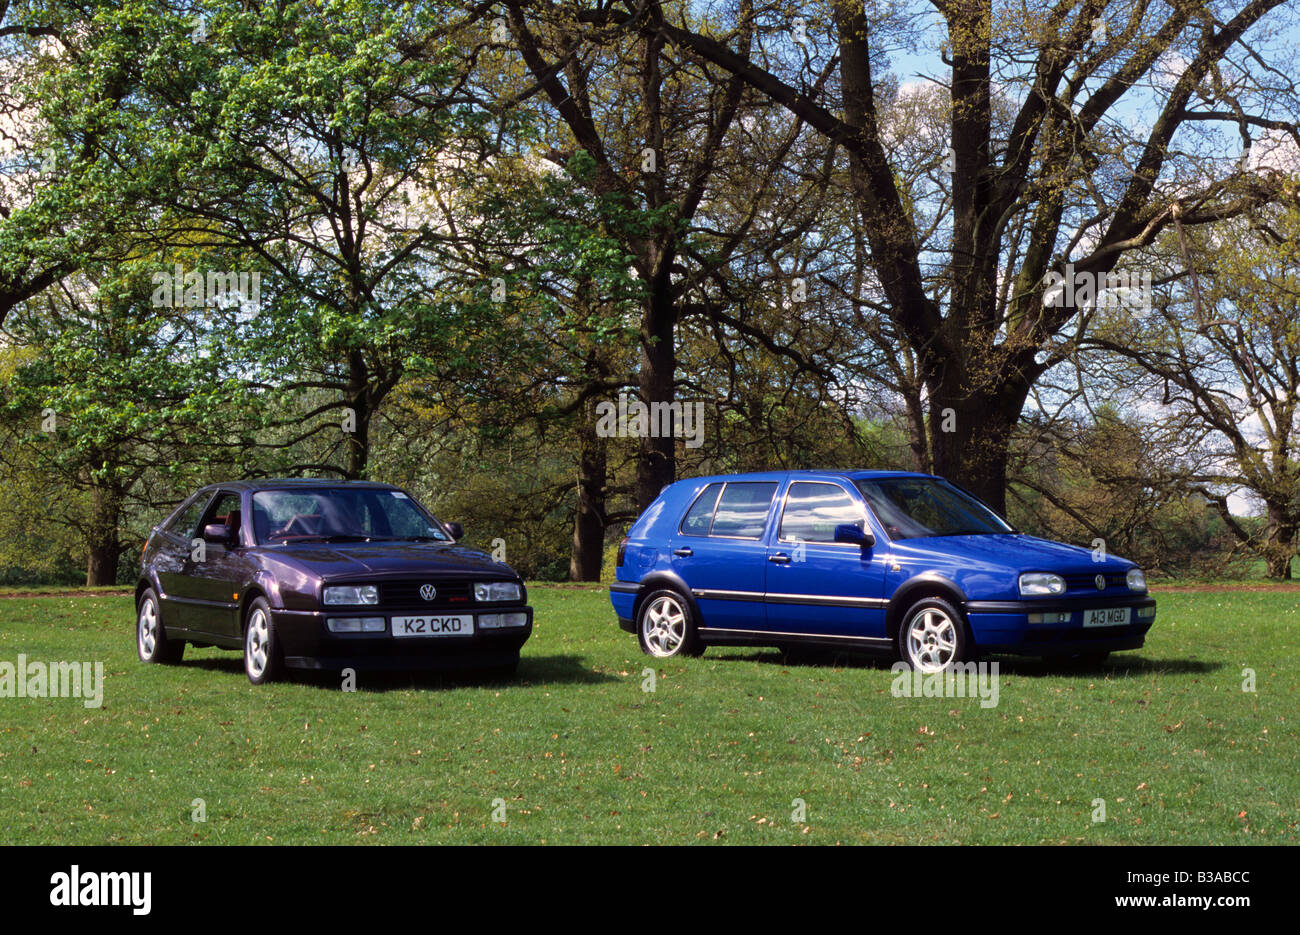 Volkswagen Corrado VR6 and Golf GTi Colour Concept Stock Photo - Alamy